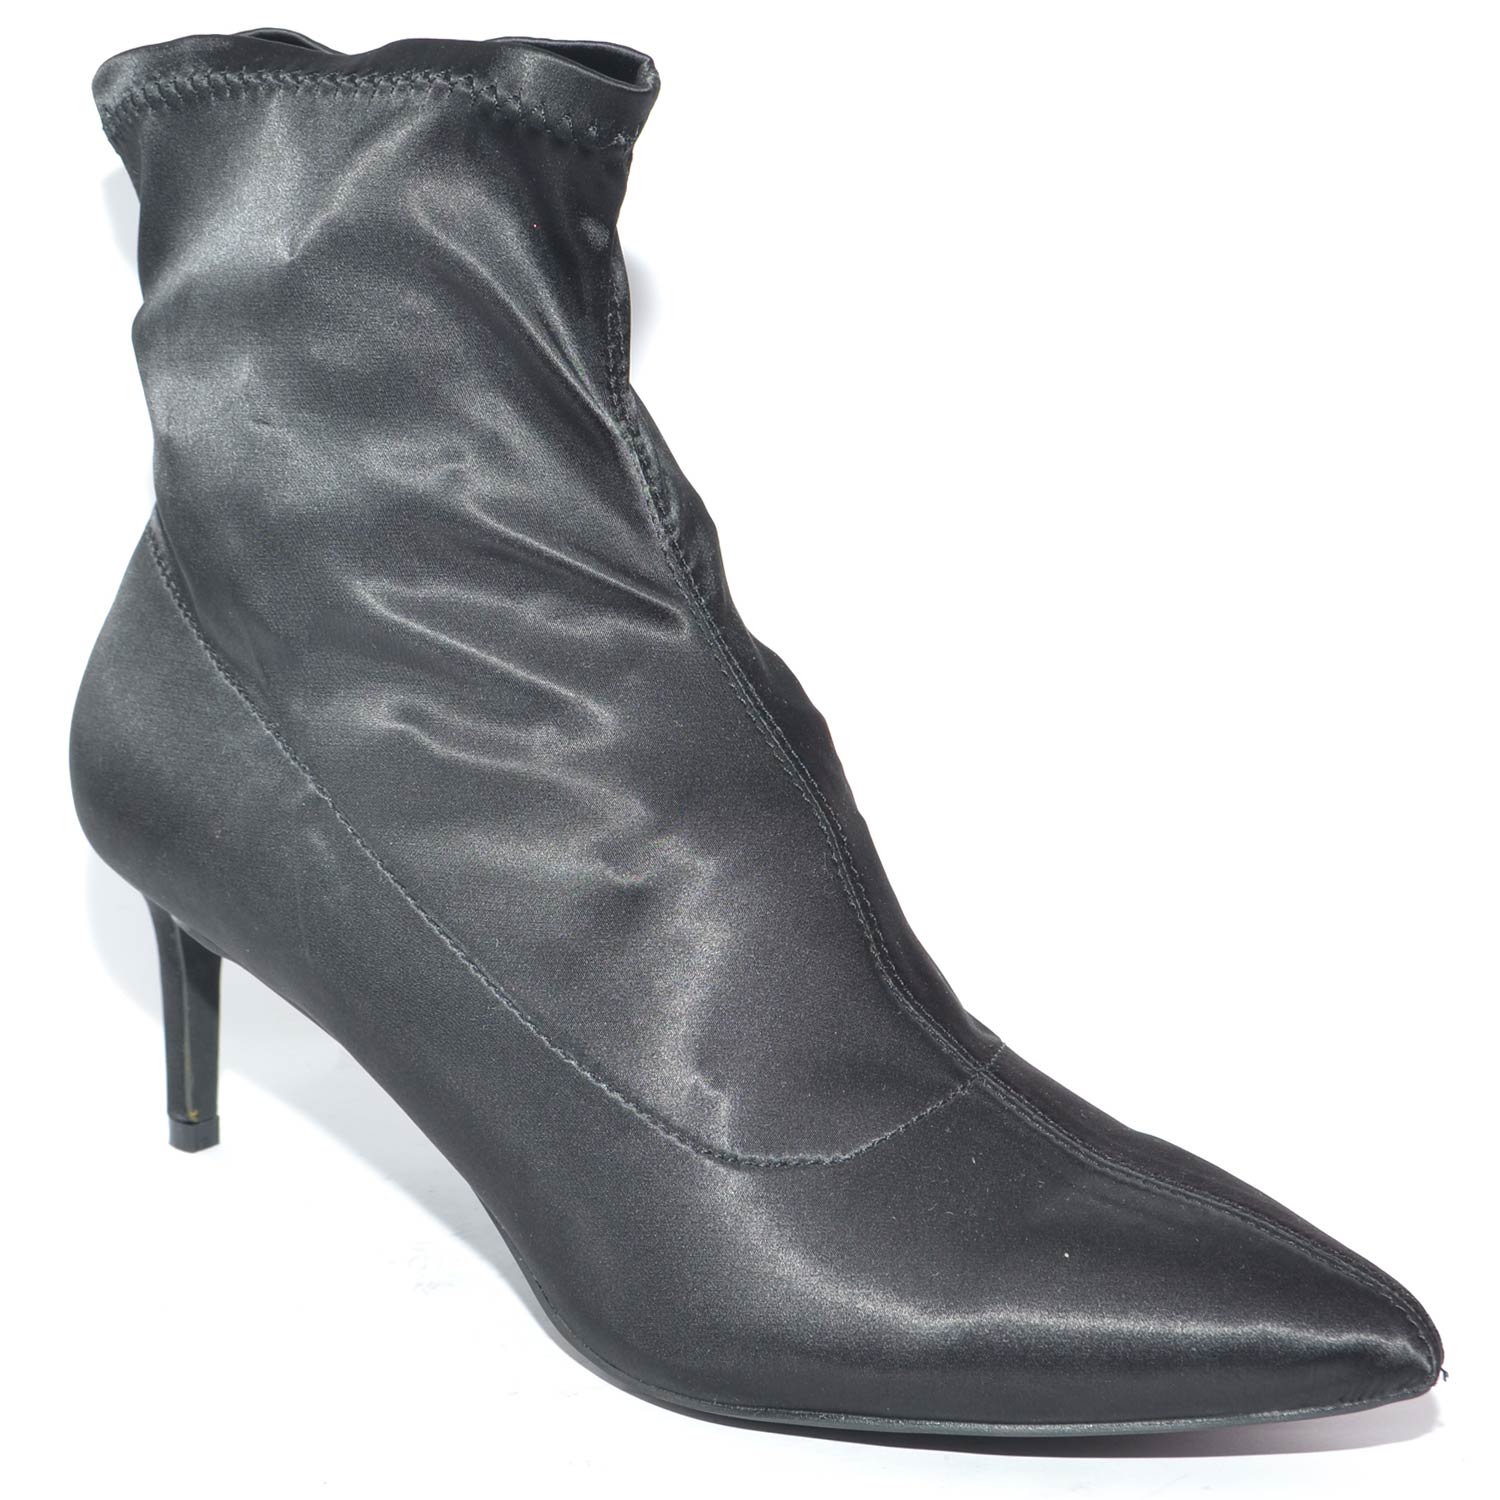 Tronchetto alto nero a punta calzino in elastene modello bale tacco a spillo  basso comfort glamour moda donna tronchetti Malu Shoes | MaluShoes